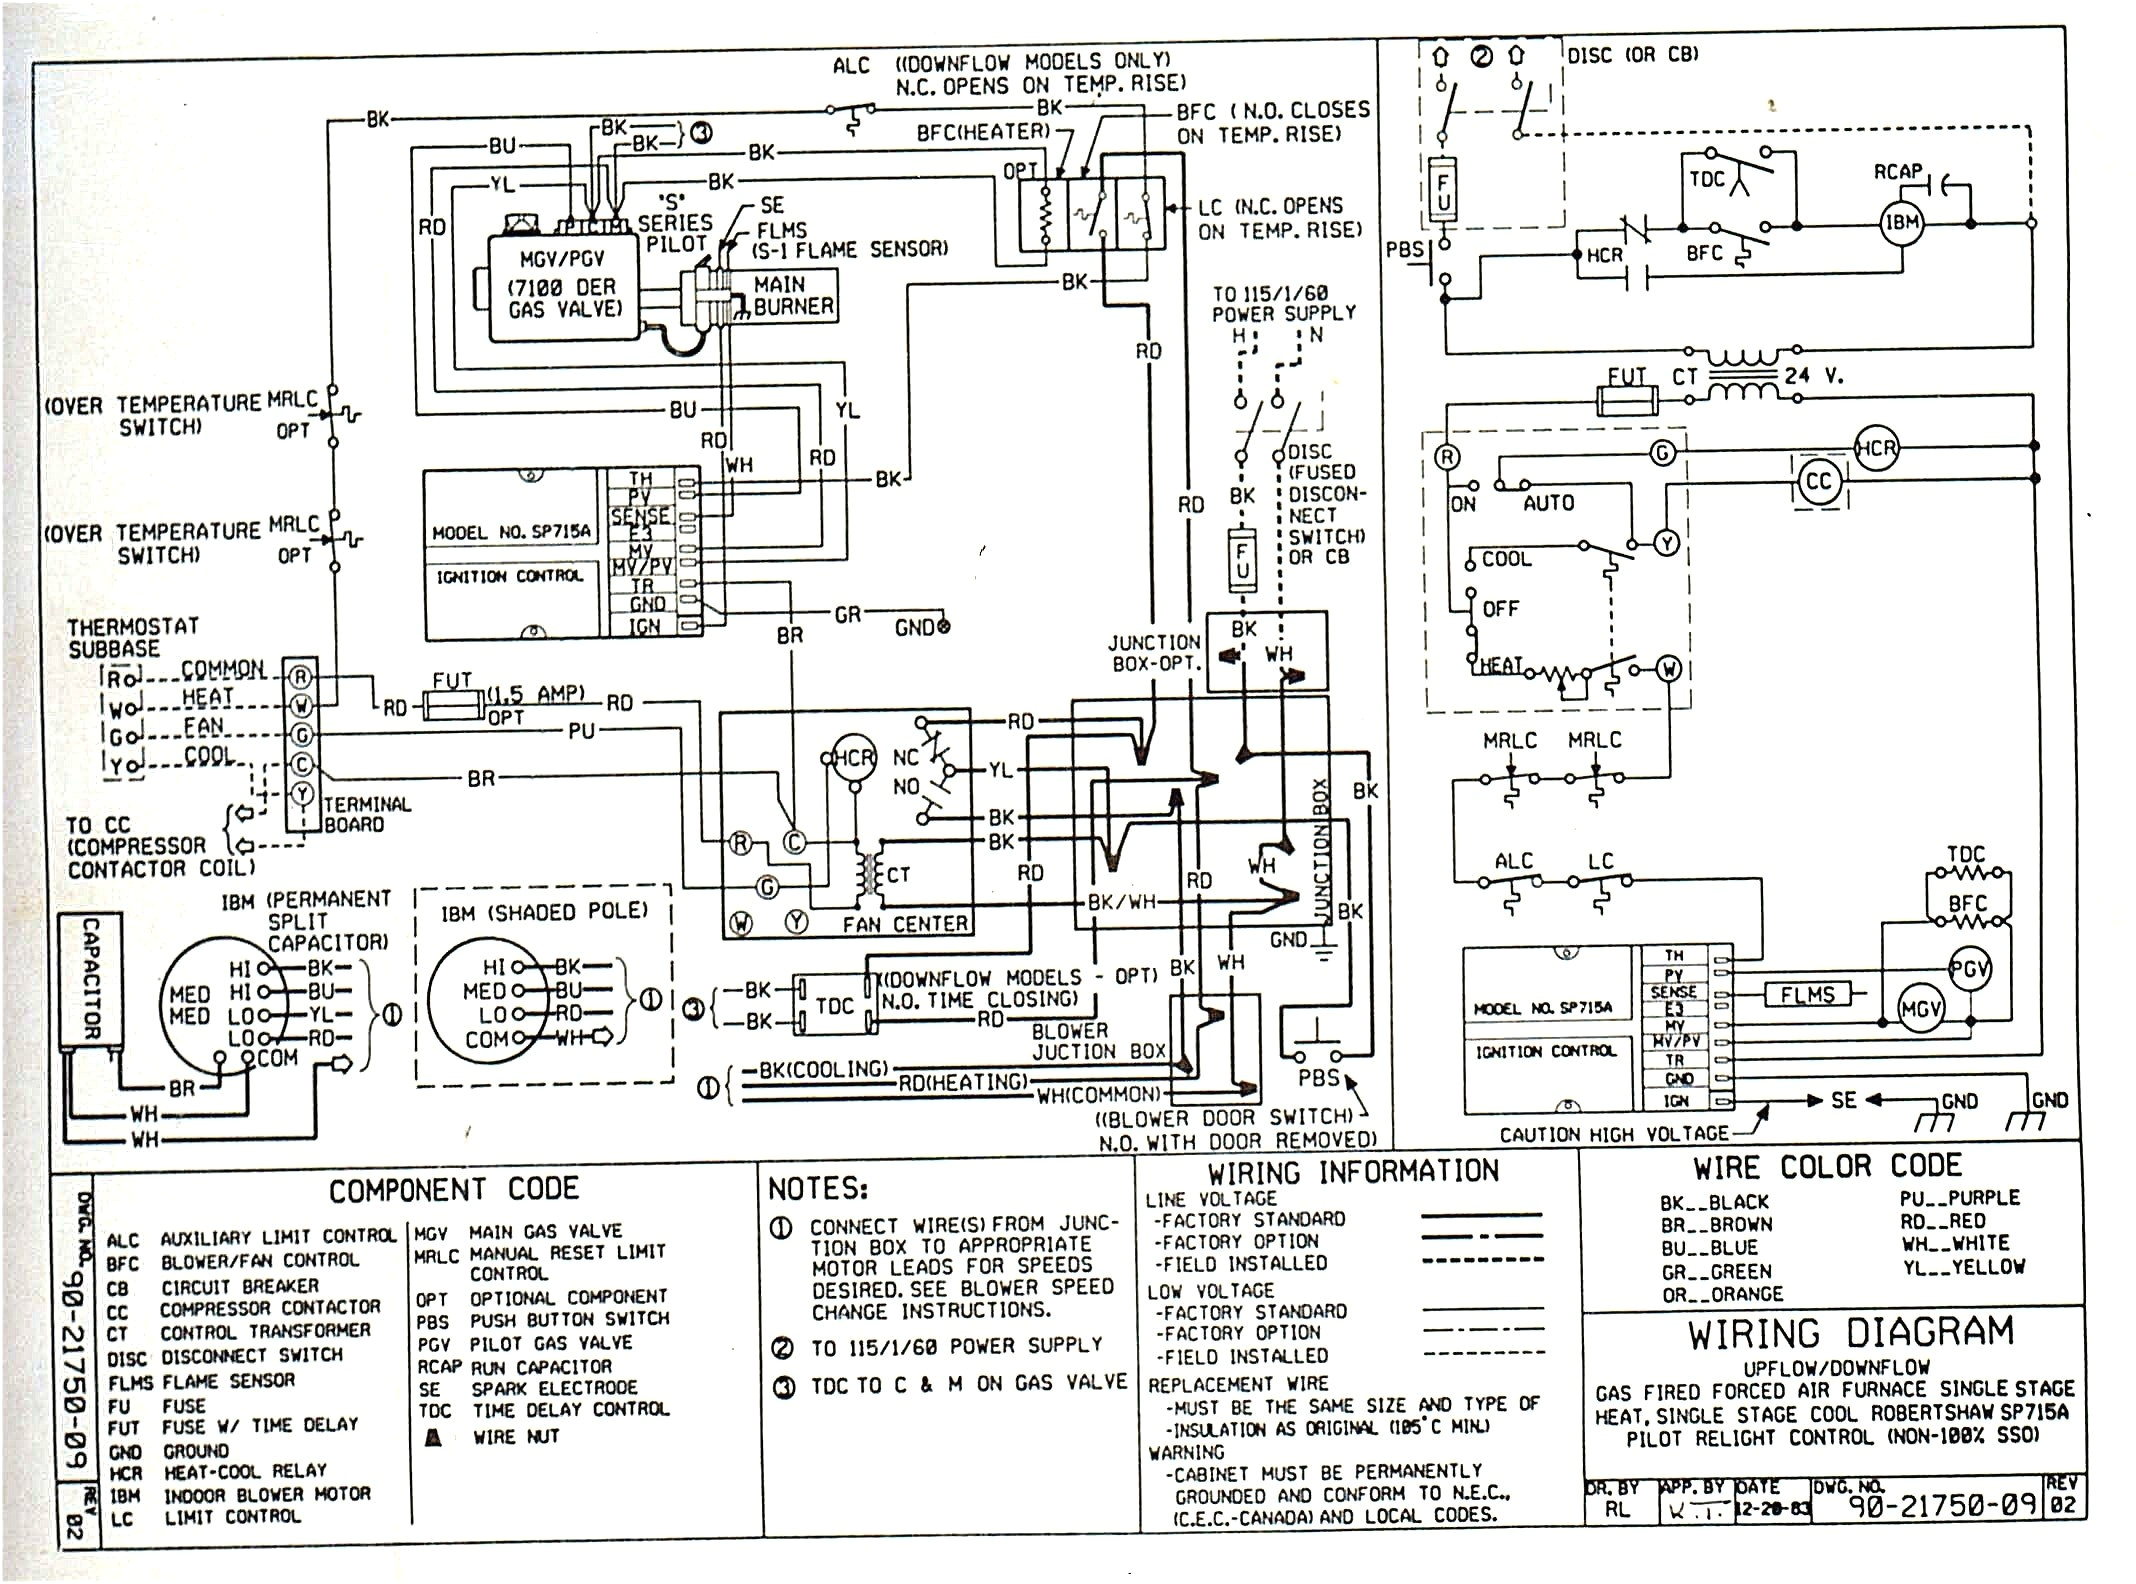 trane schematics diagrams blog wiring diagram trane ac schematics